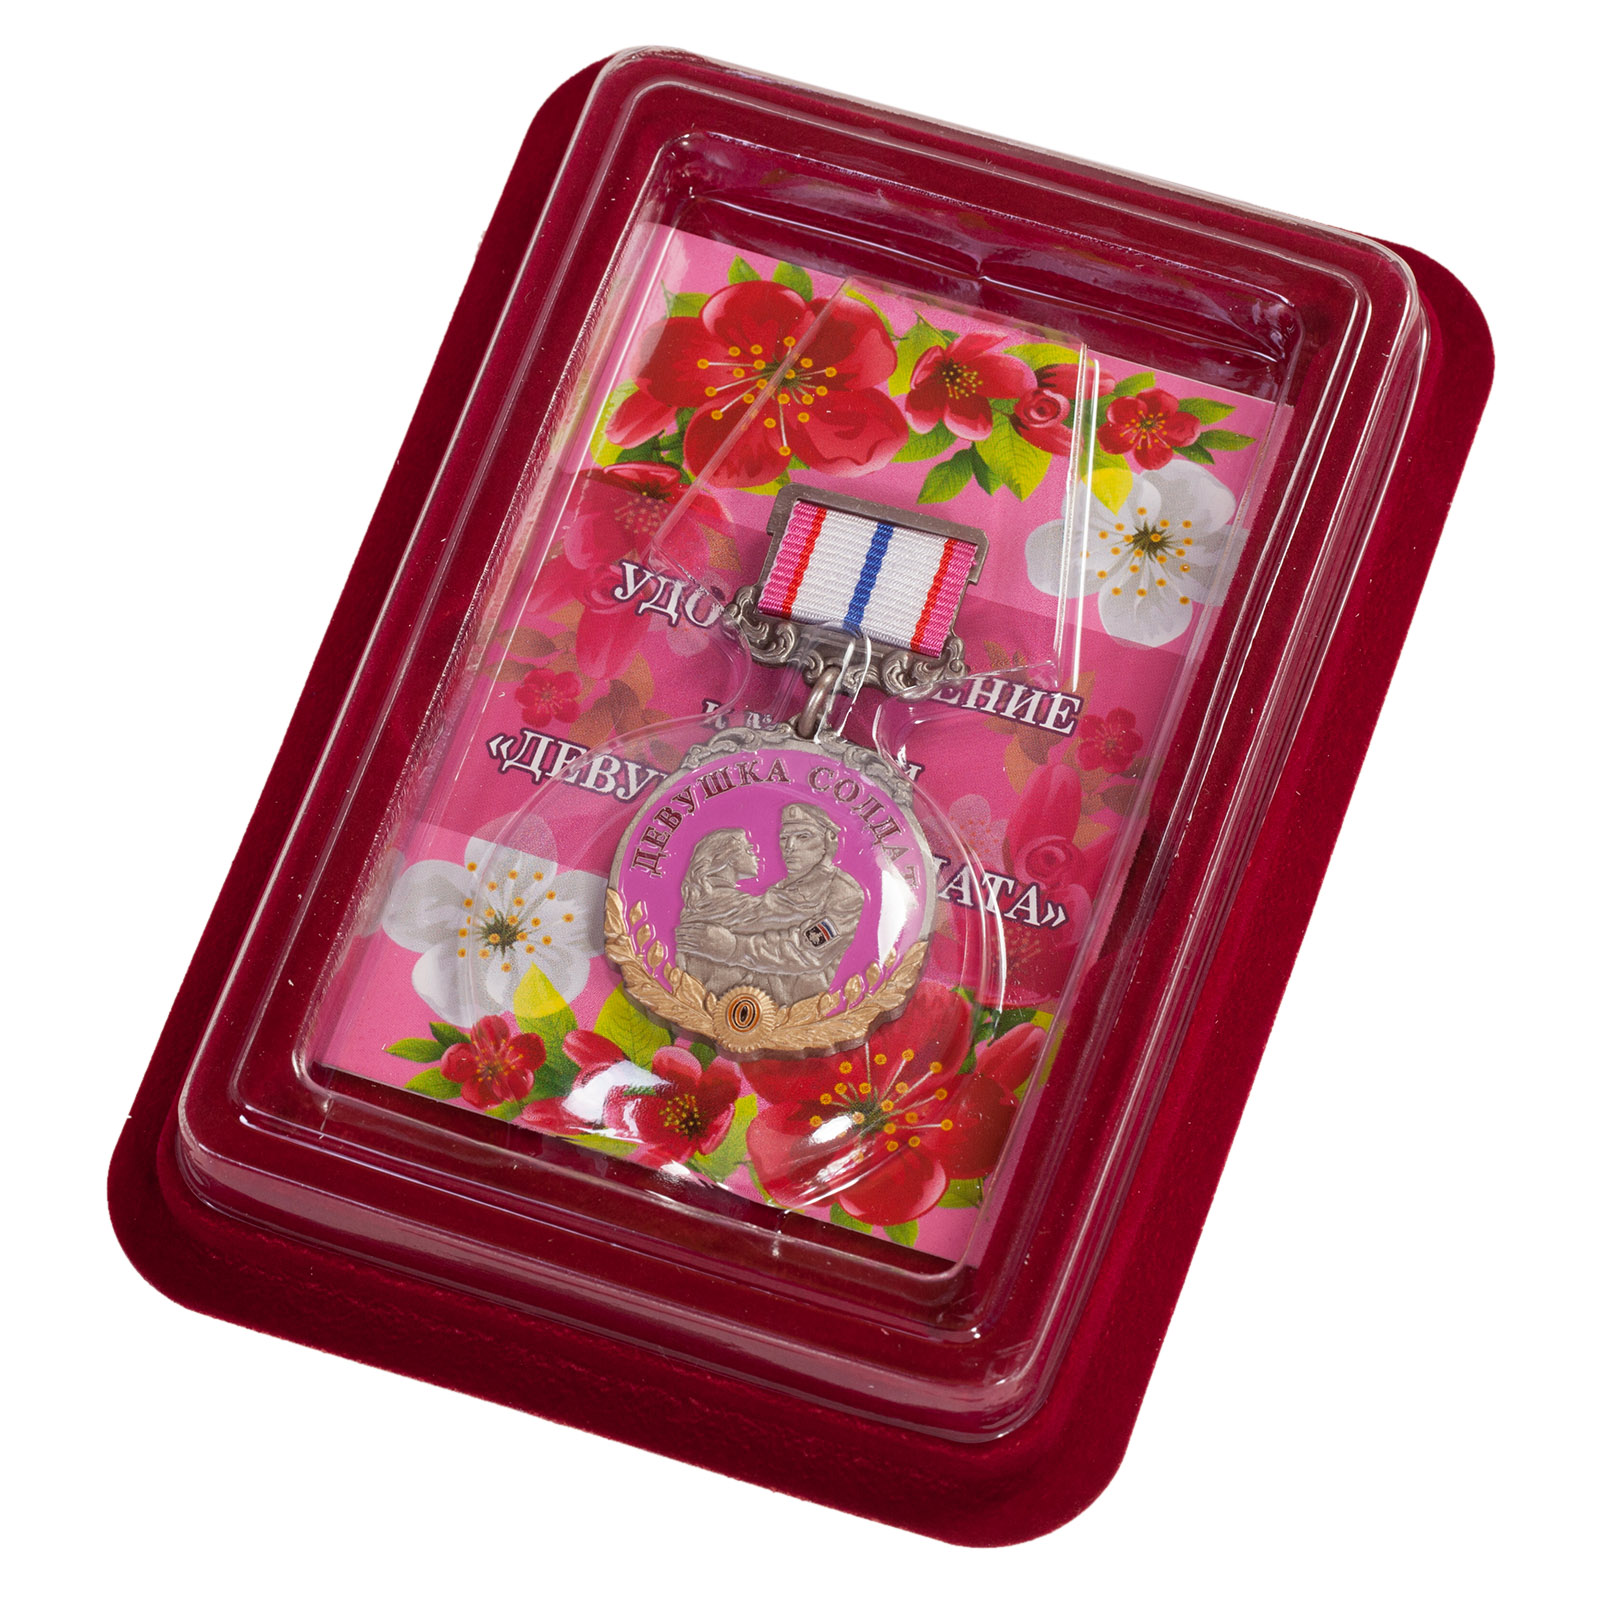 Медаль девушке солдата "За любовь и верность" - купить в подарок